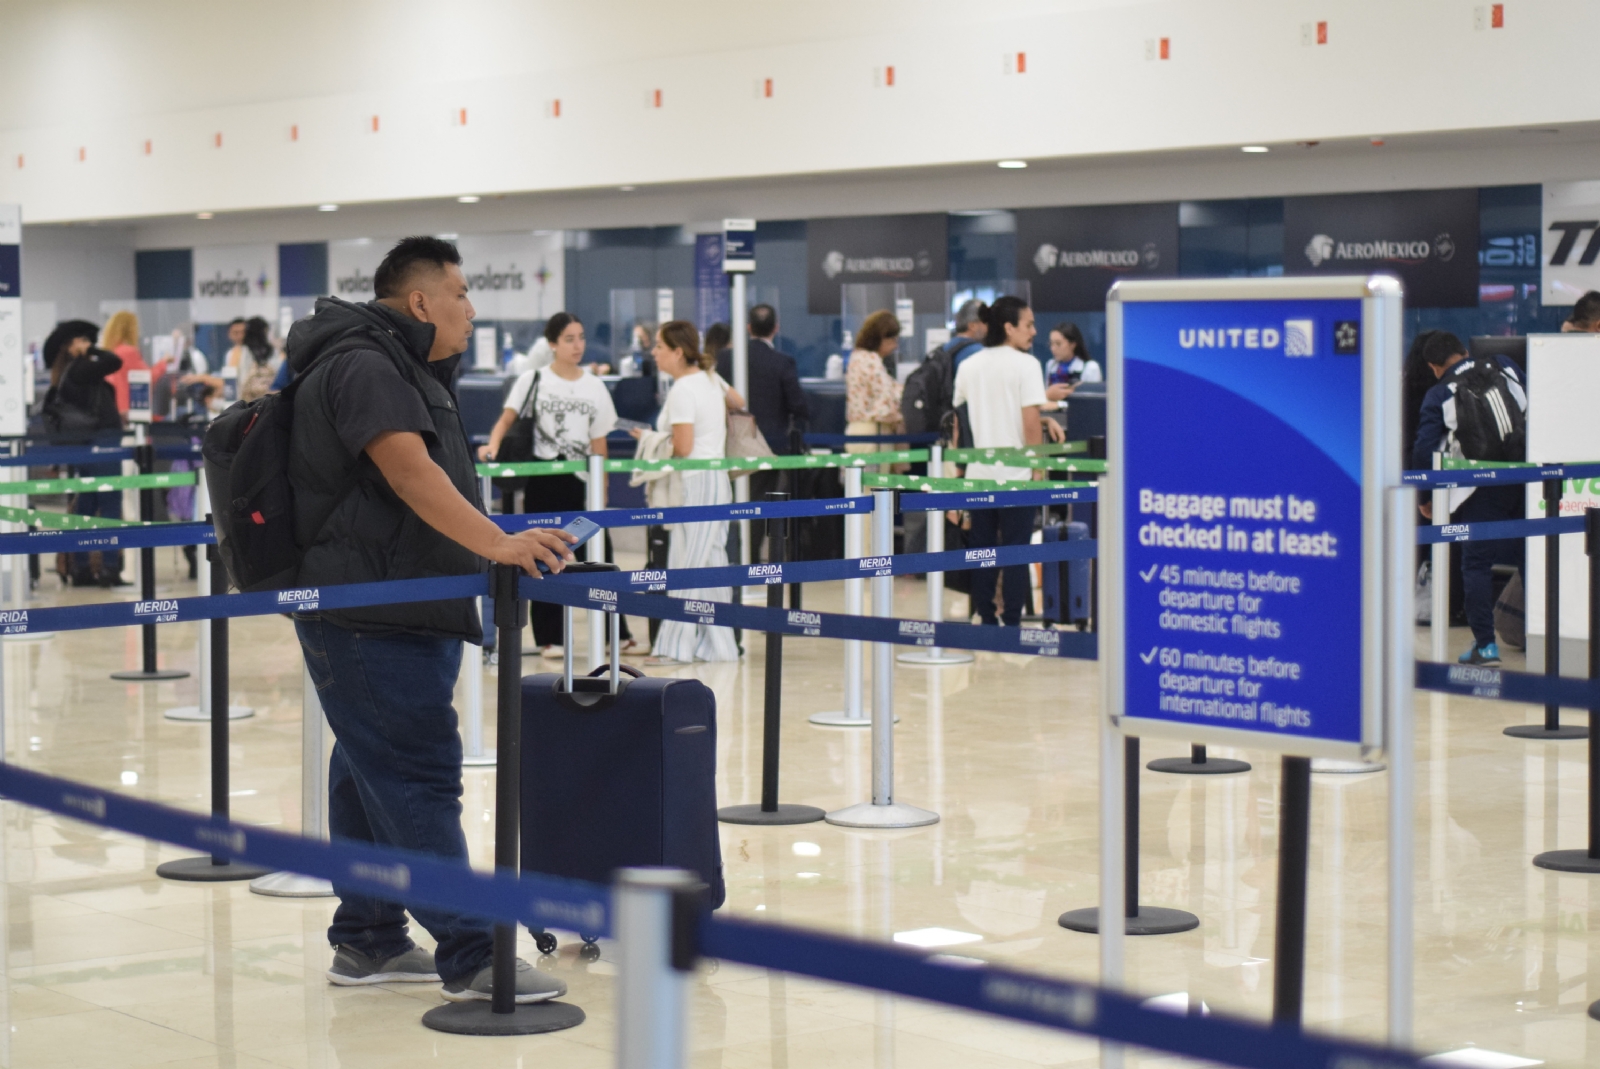 Aeropuerto de Mérida: Después de 5 años, migrante regresa para ver a su familia